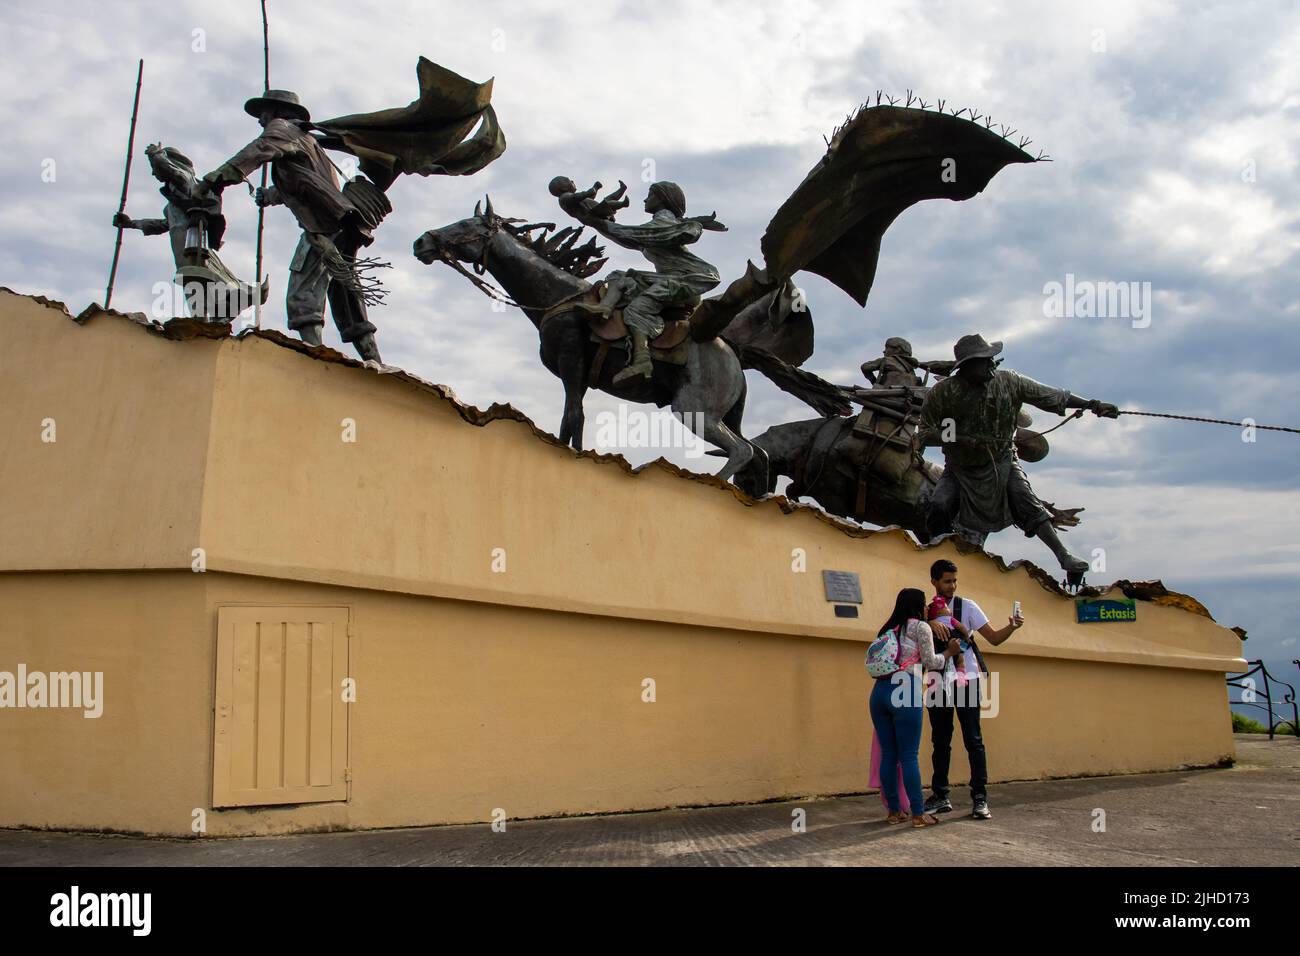 MANIZALES, KOLUMBIEN - MAI 2022: Touristen am Monument für die Kolonisatoren, das der Künstler Luis Guillermo Vallejo mit dem Sandbronzeguss geschaffen hat Stockfoto